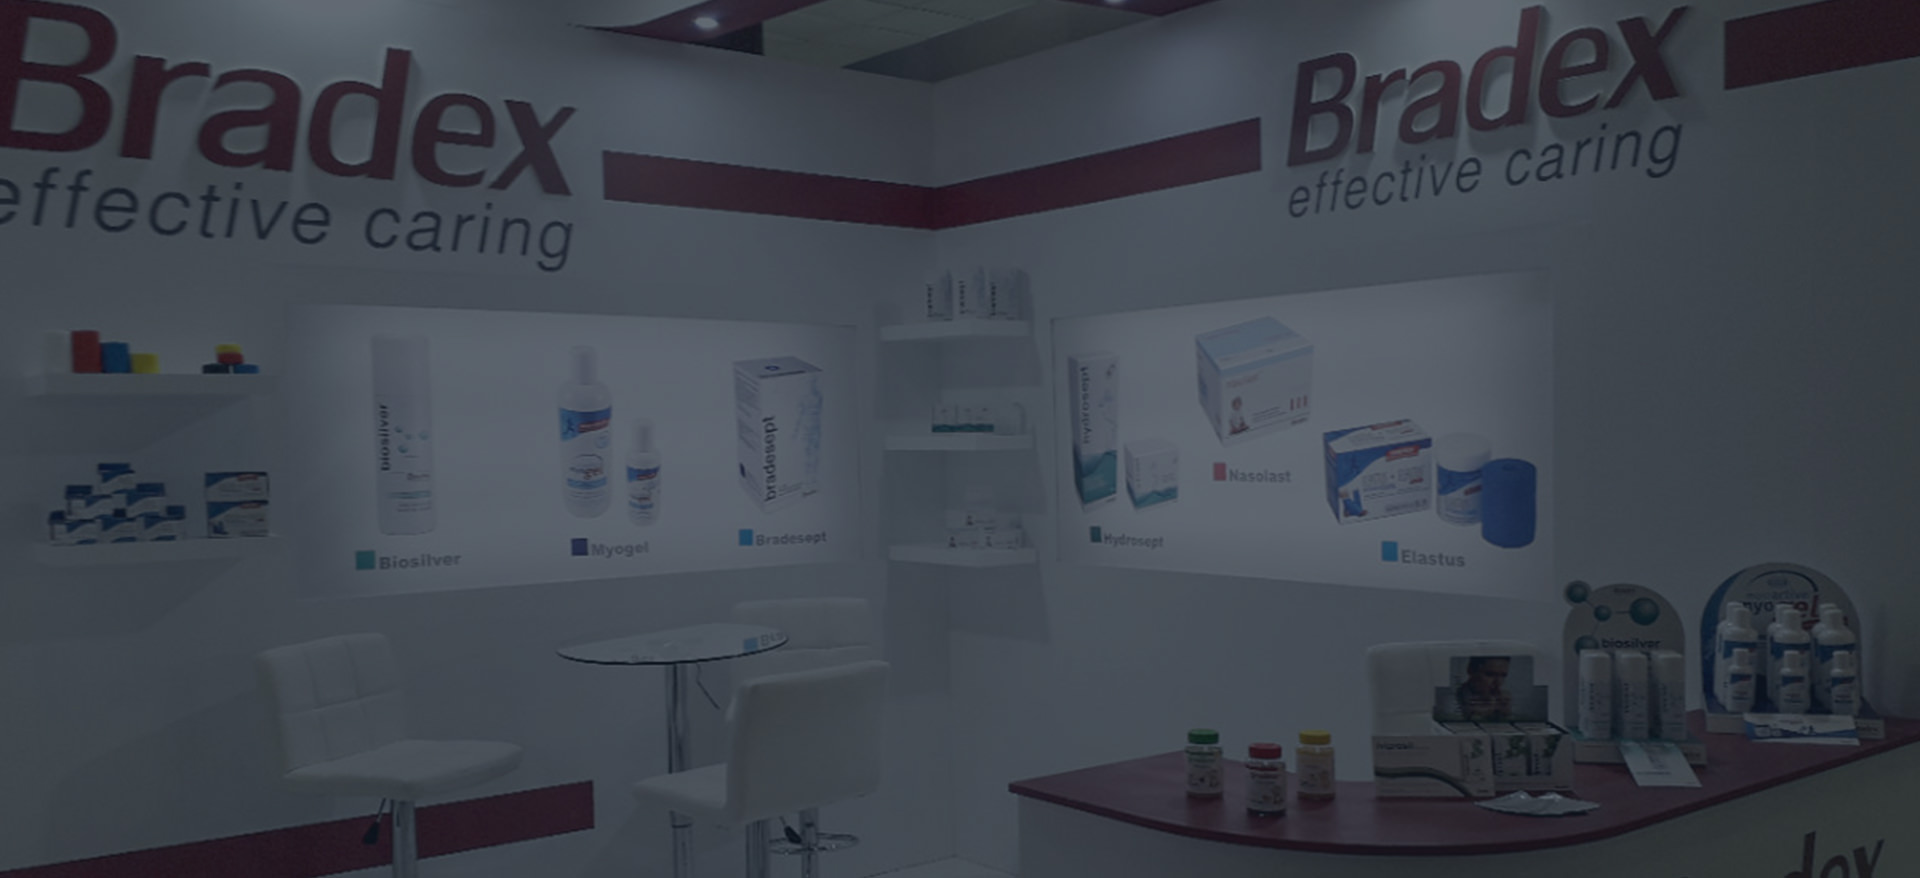 Η Φαρμακευτική εταιρεία Bradex συμμετείχε  για 3η χρονιά στην Hellas Pharm 2019